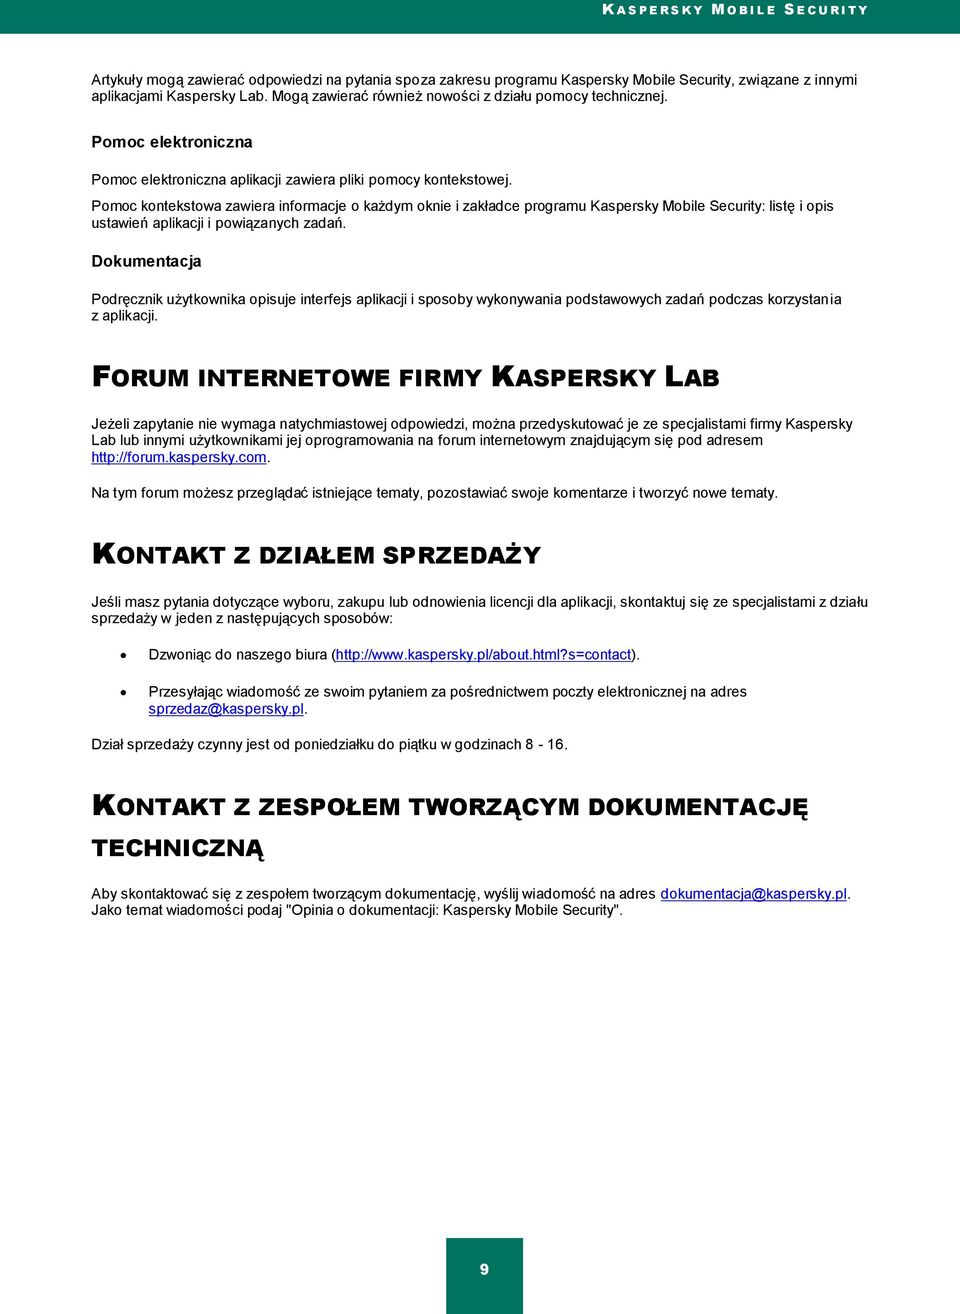 Pomoc kontekstowa zawiera informacje o każdym oknie i zakładce programu Kaspersky Mobile Security: listę i opis ustawień aplikacji i powiązanych zadań.